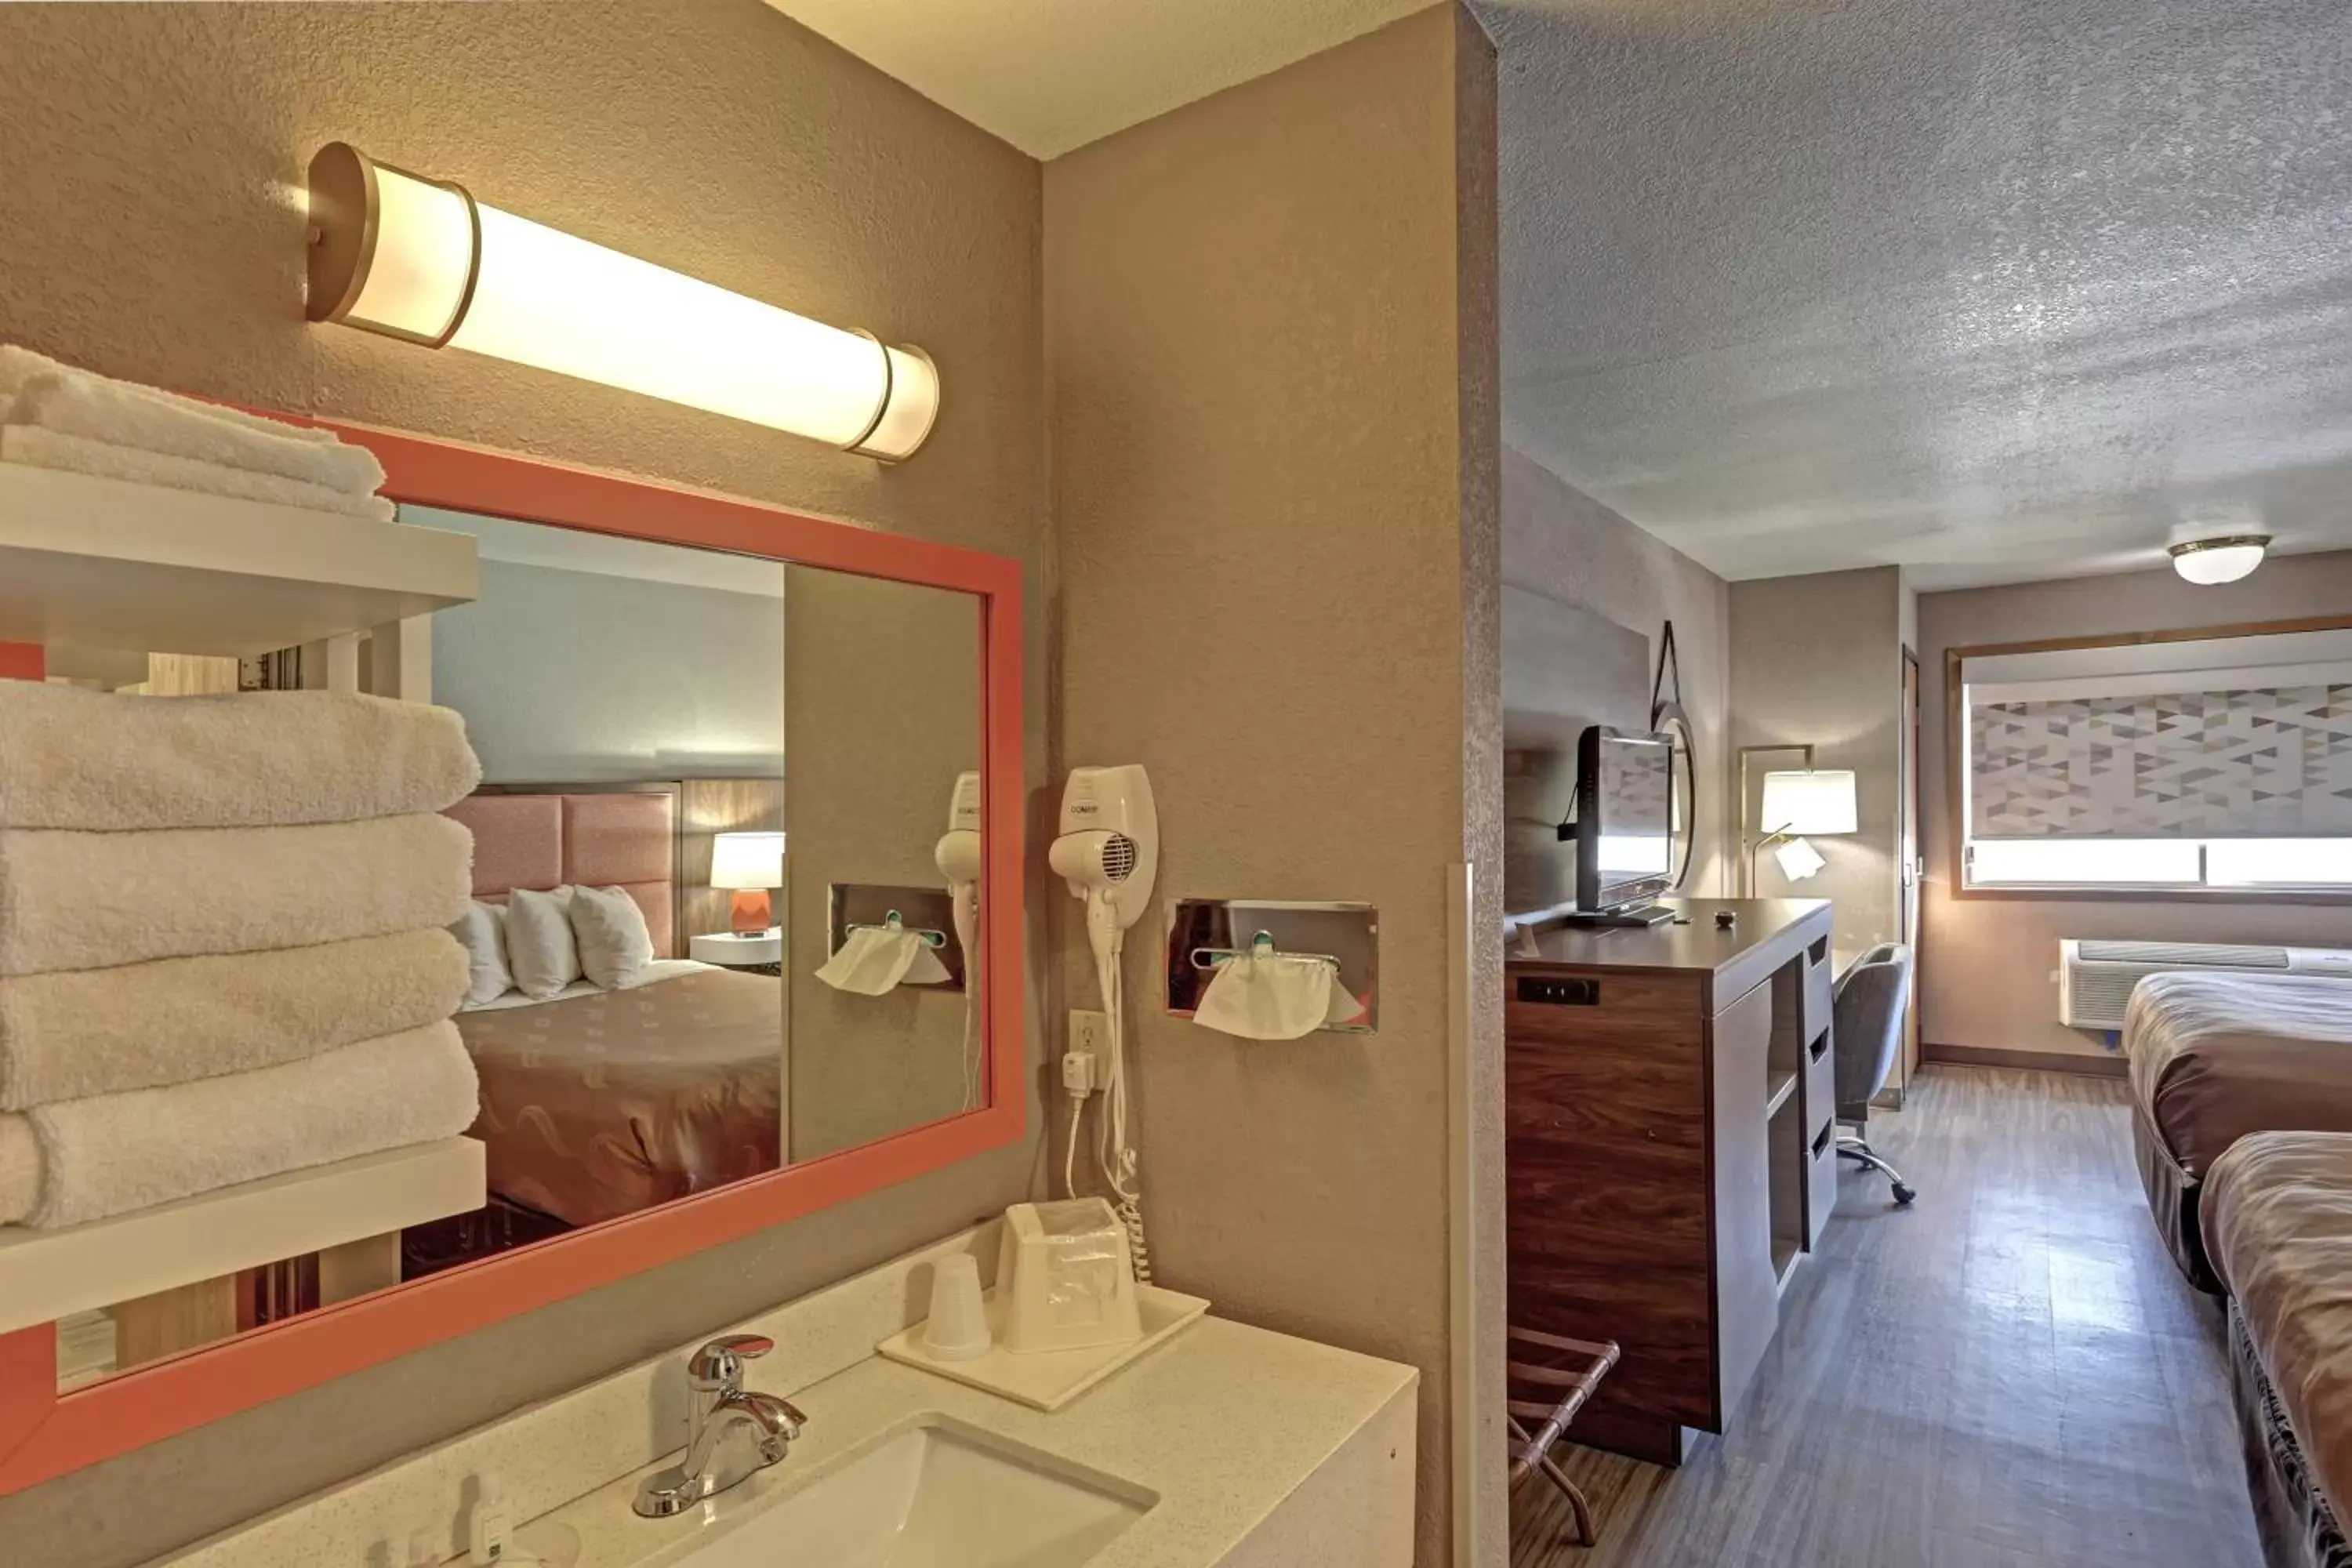 Bedroom, Bathroom in Quality Inn Pierre-Fort Pierre